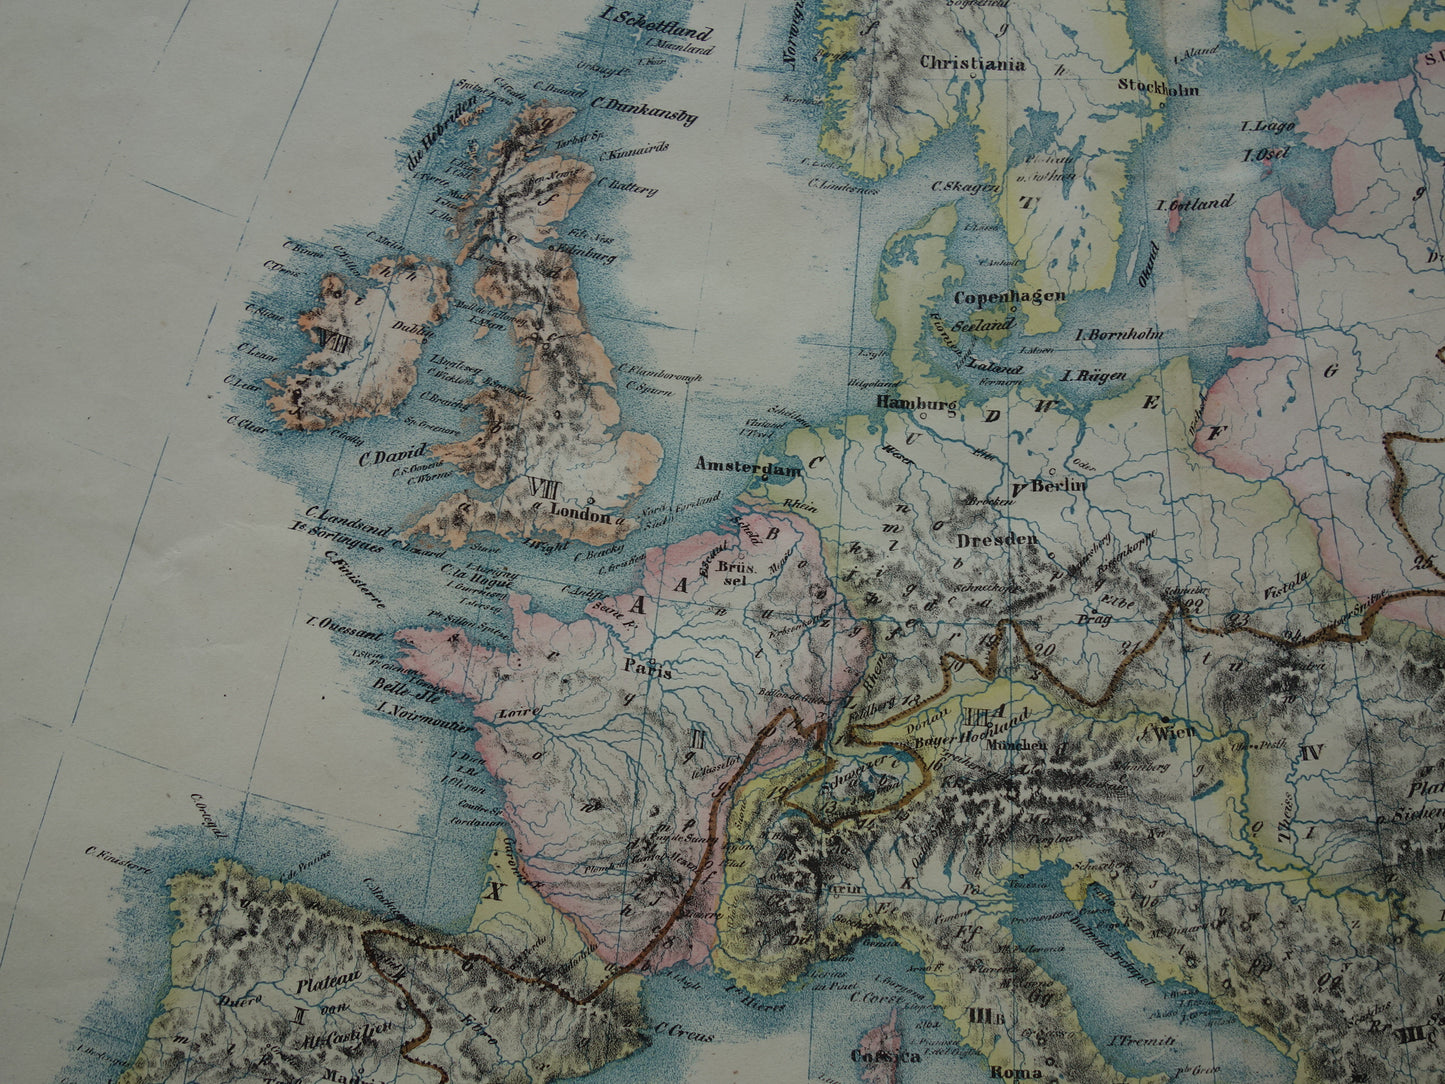 EUROPA grote oude kaart bergen van Europa uit 1840 originele antieke landkaart gebergten Europees continent hoogste bergtoppen Alpen Karpaten vintage print